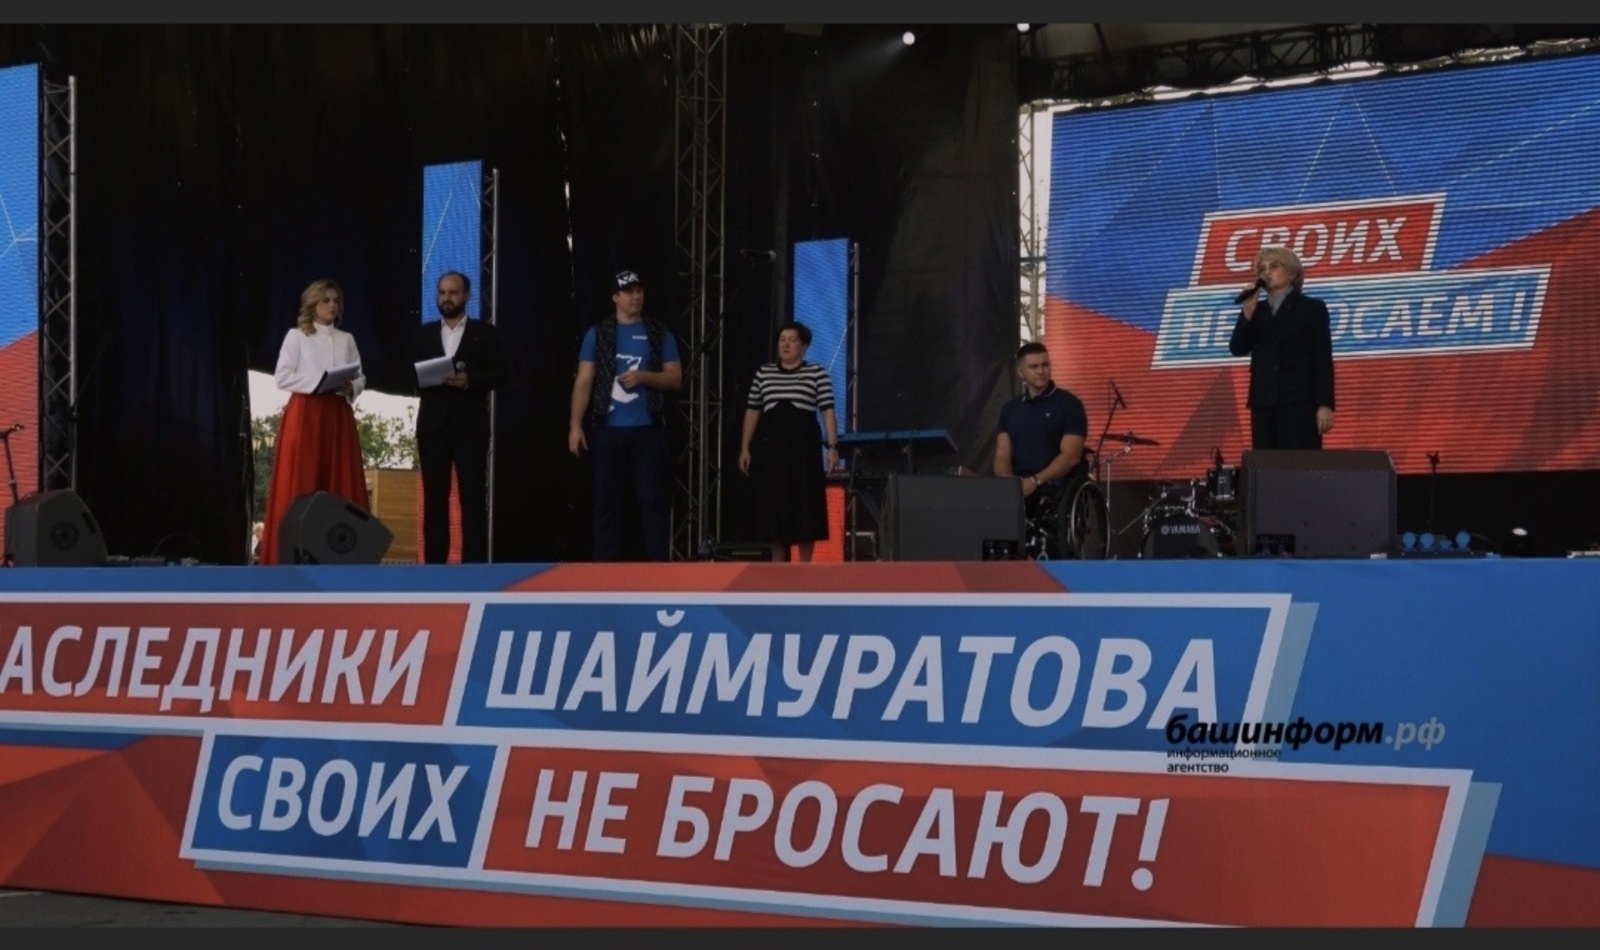 В Уфе на митинг «Потомки Шаймуратова своих не бросают!» пришли 20 тысяч жителей Башкирии